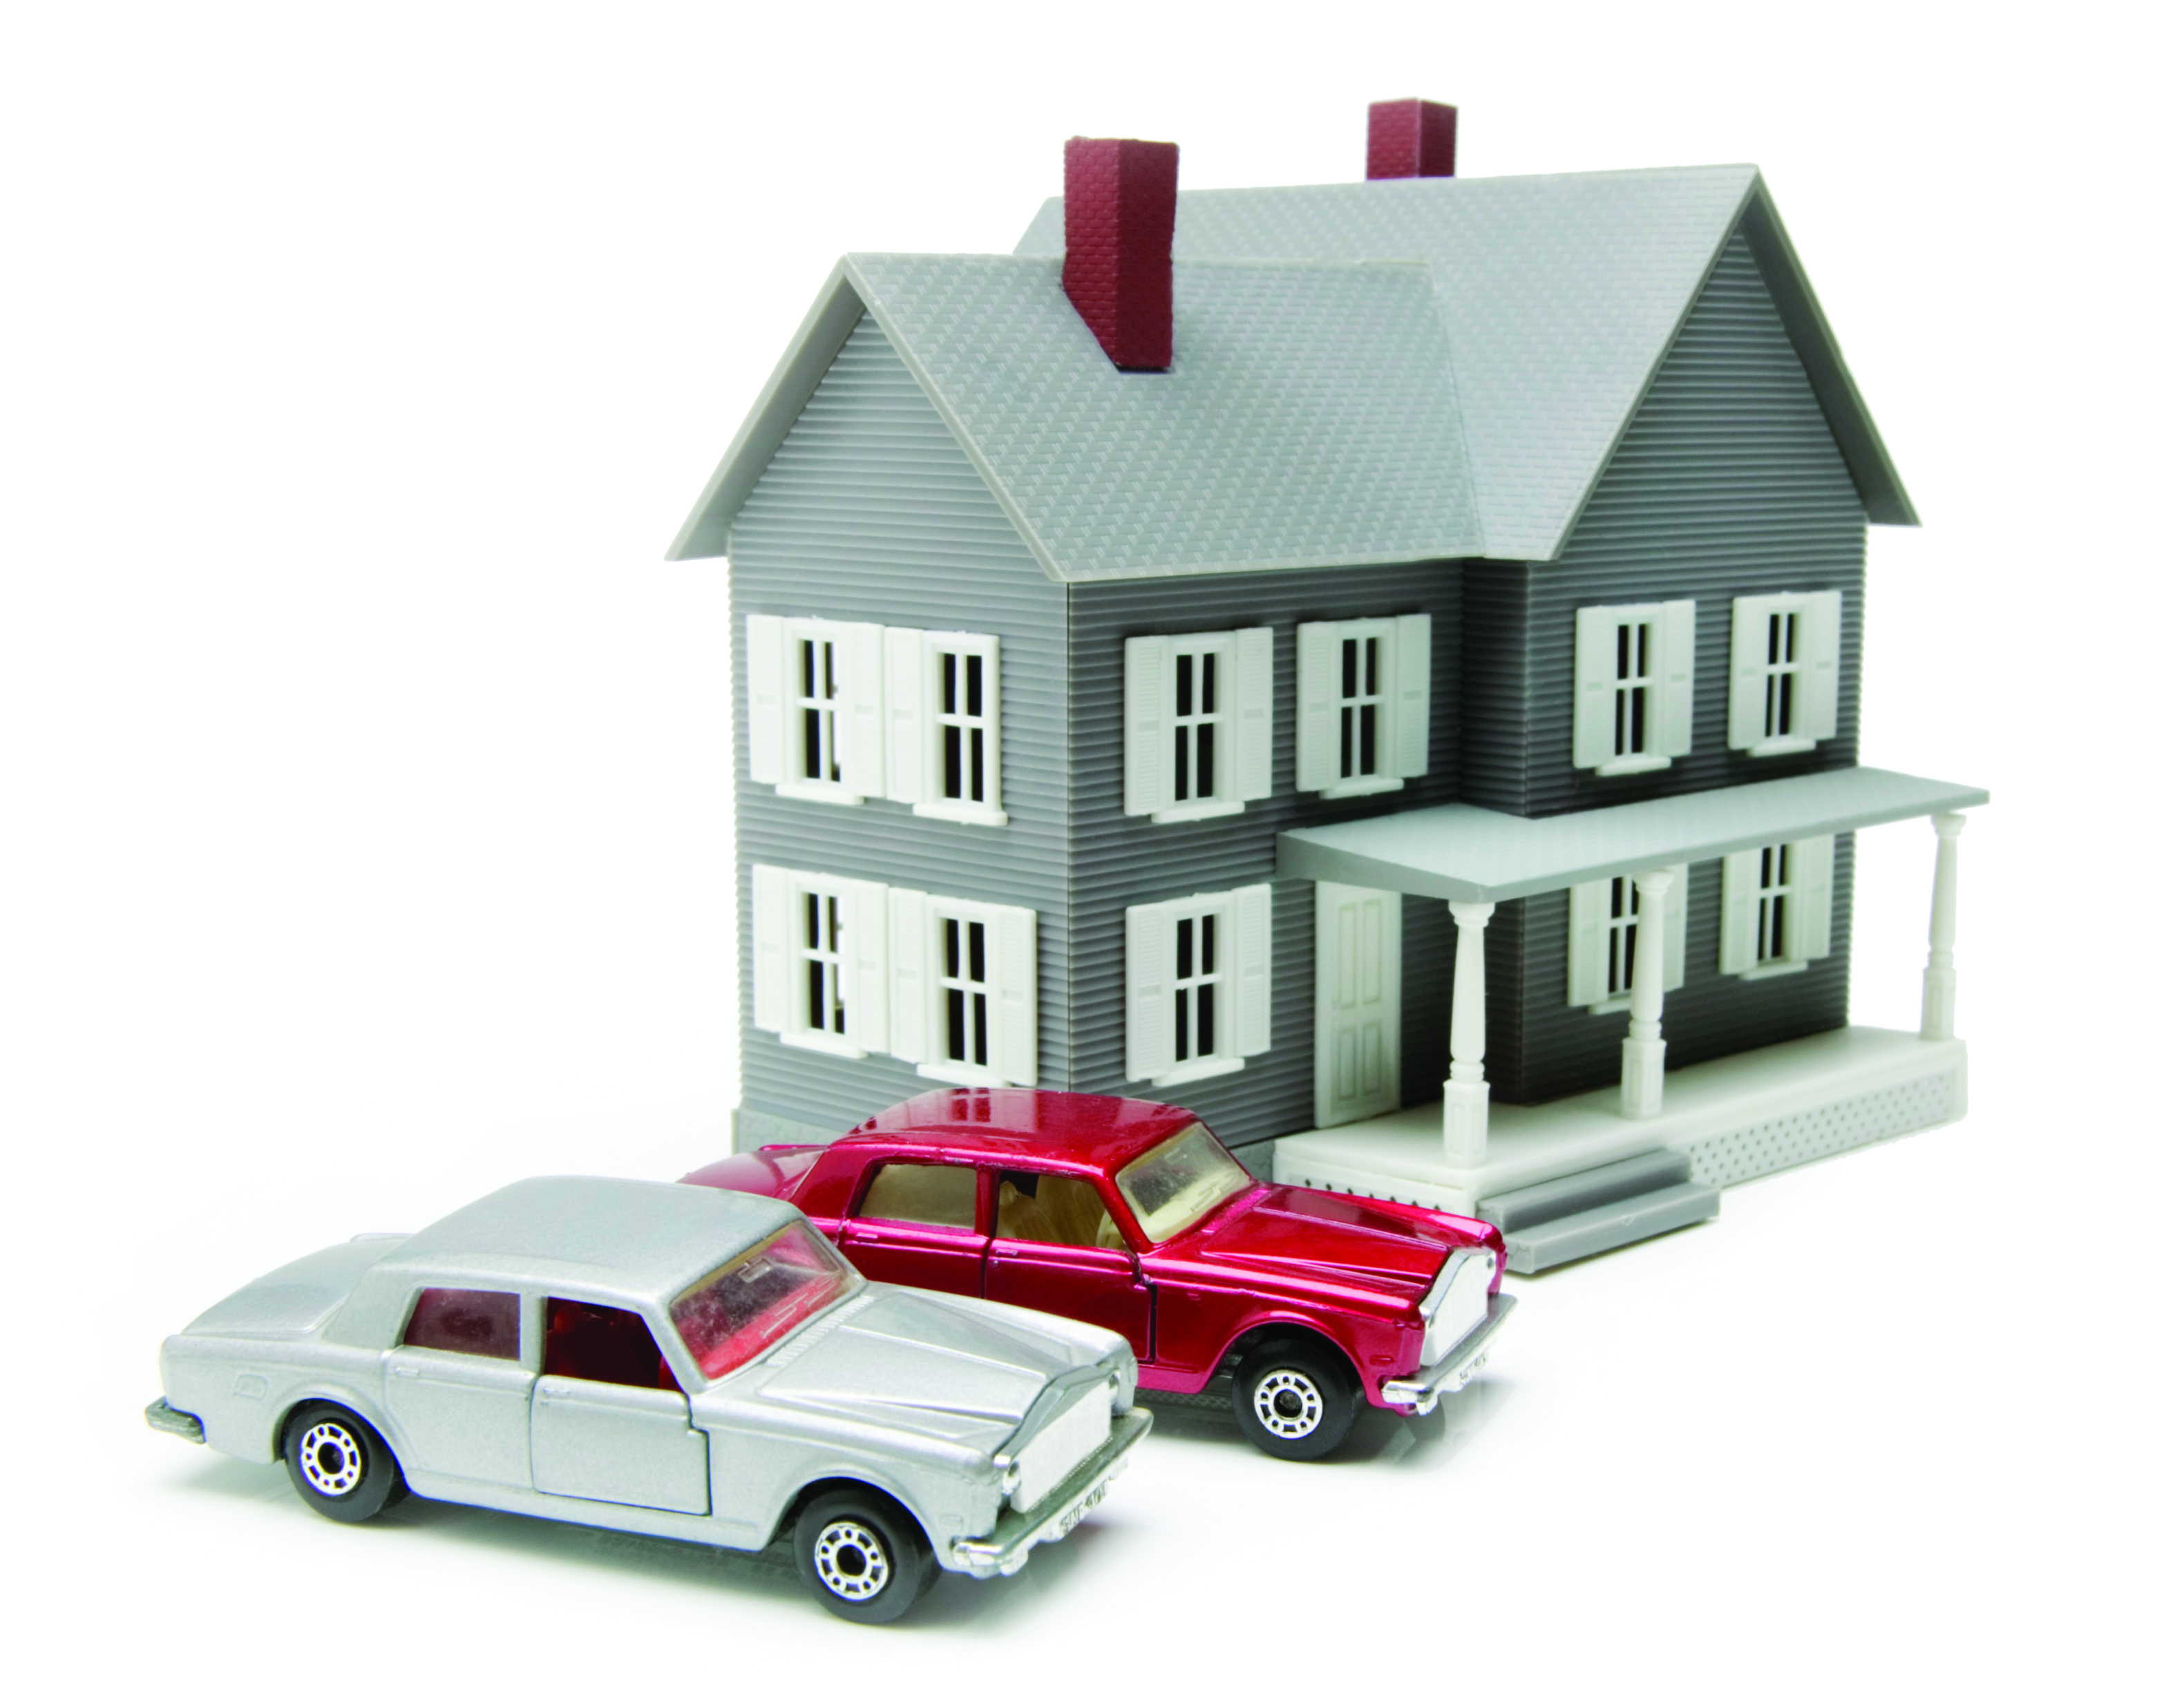 Имущество переезжающего. Недвижимость и автомобиль. Автомобиль это недвижимое имущество. Оценка имущества движимого и недвижимого имущества. Имущество недвижимость транспортные средства.